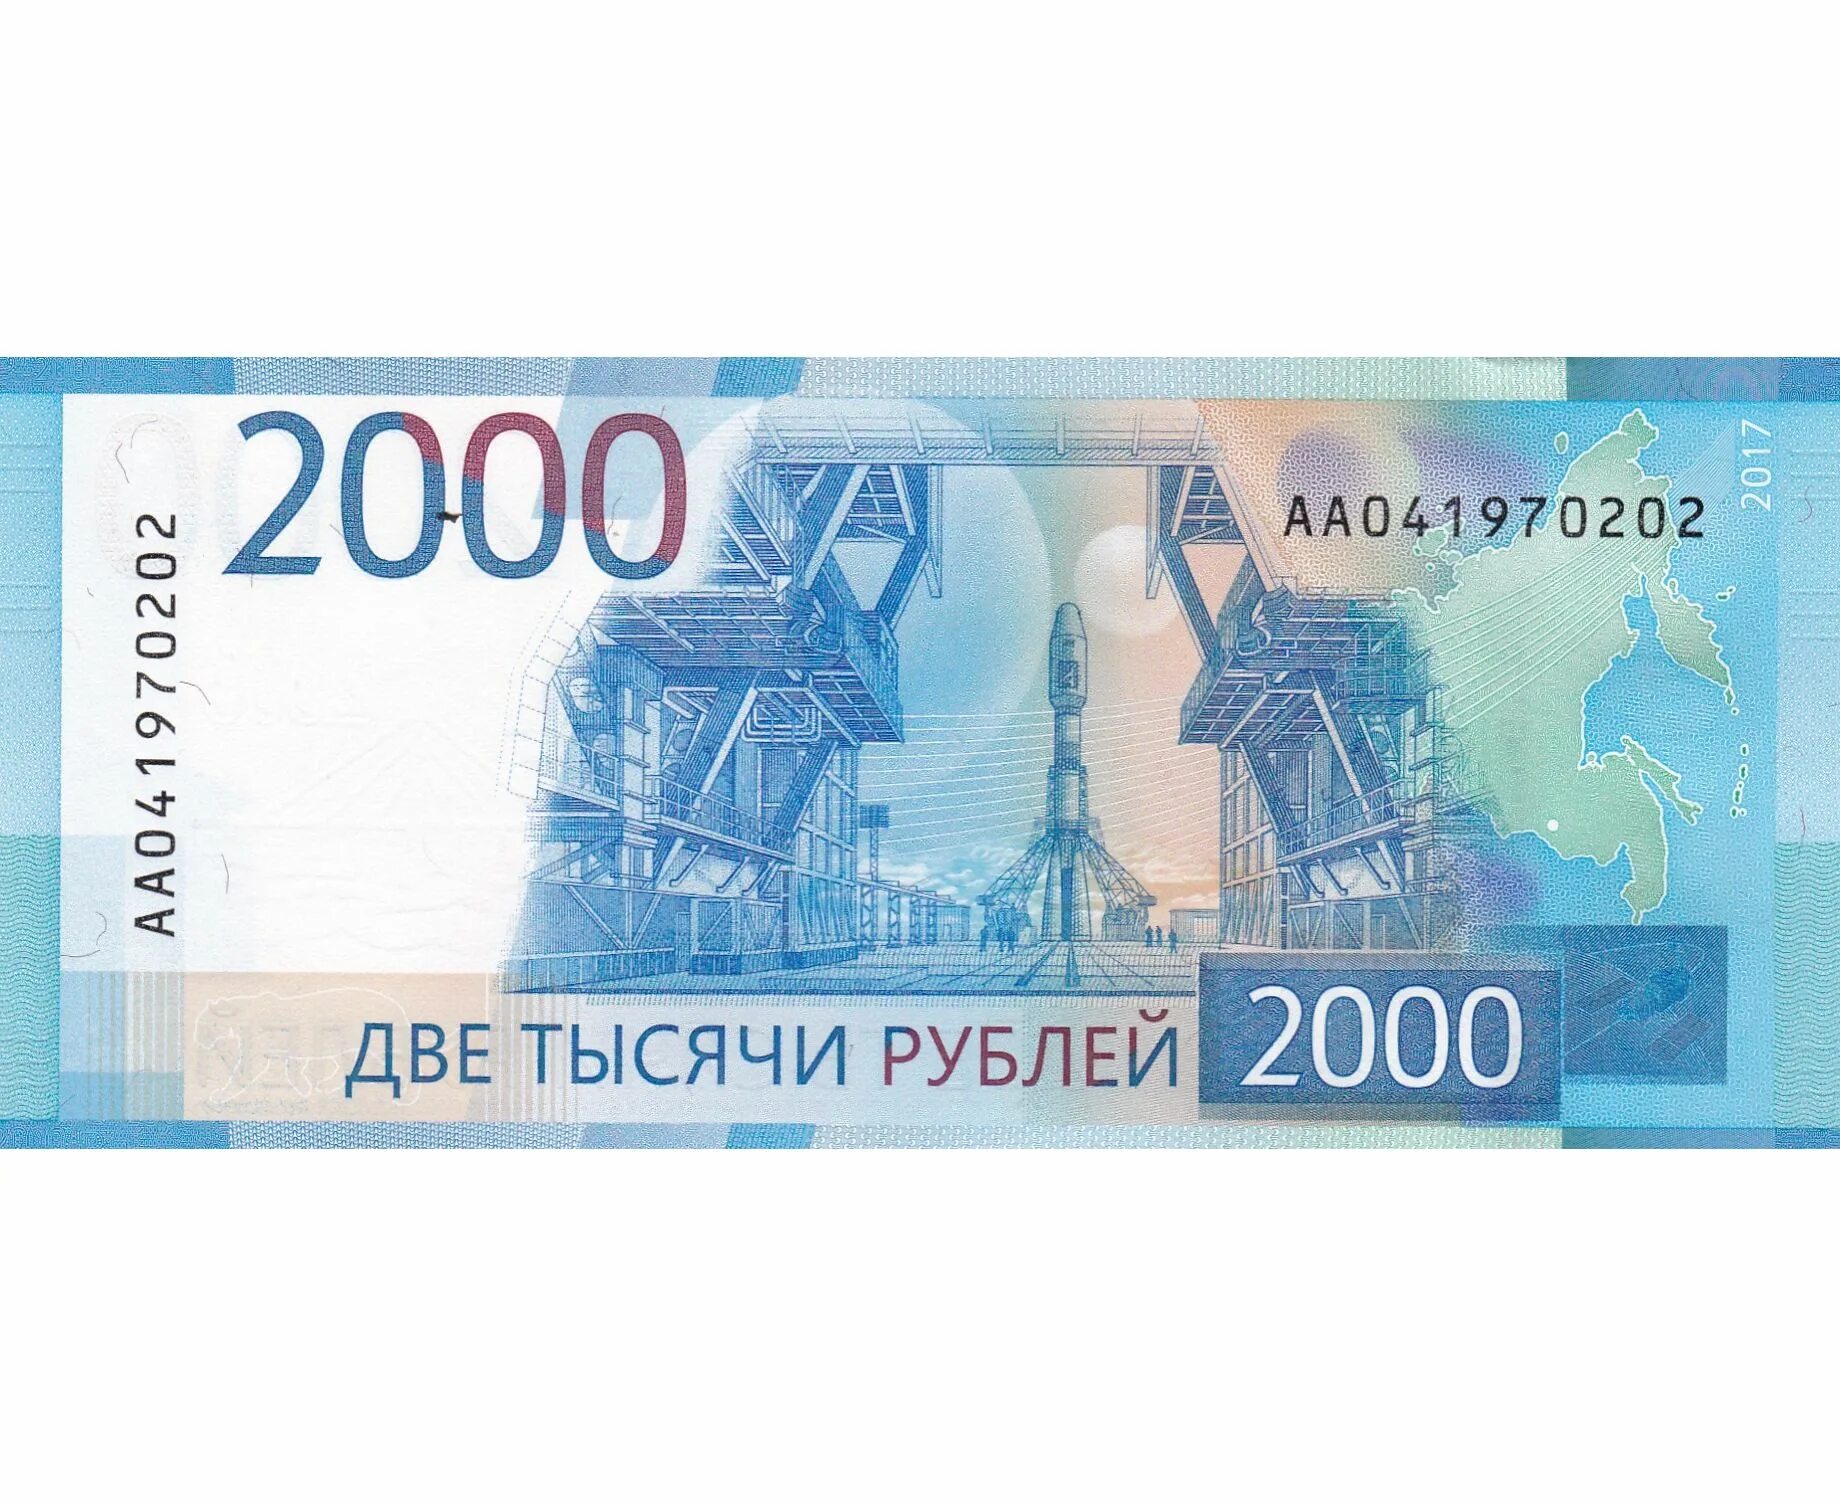 2000 Рублей банкнота. Купюры России 2000. 2 Тысячи рублей. Купюра 2 тысячи рублей.